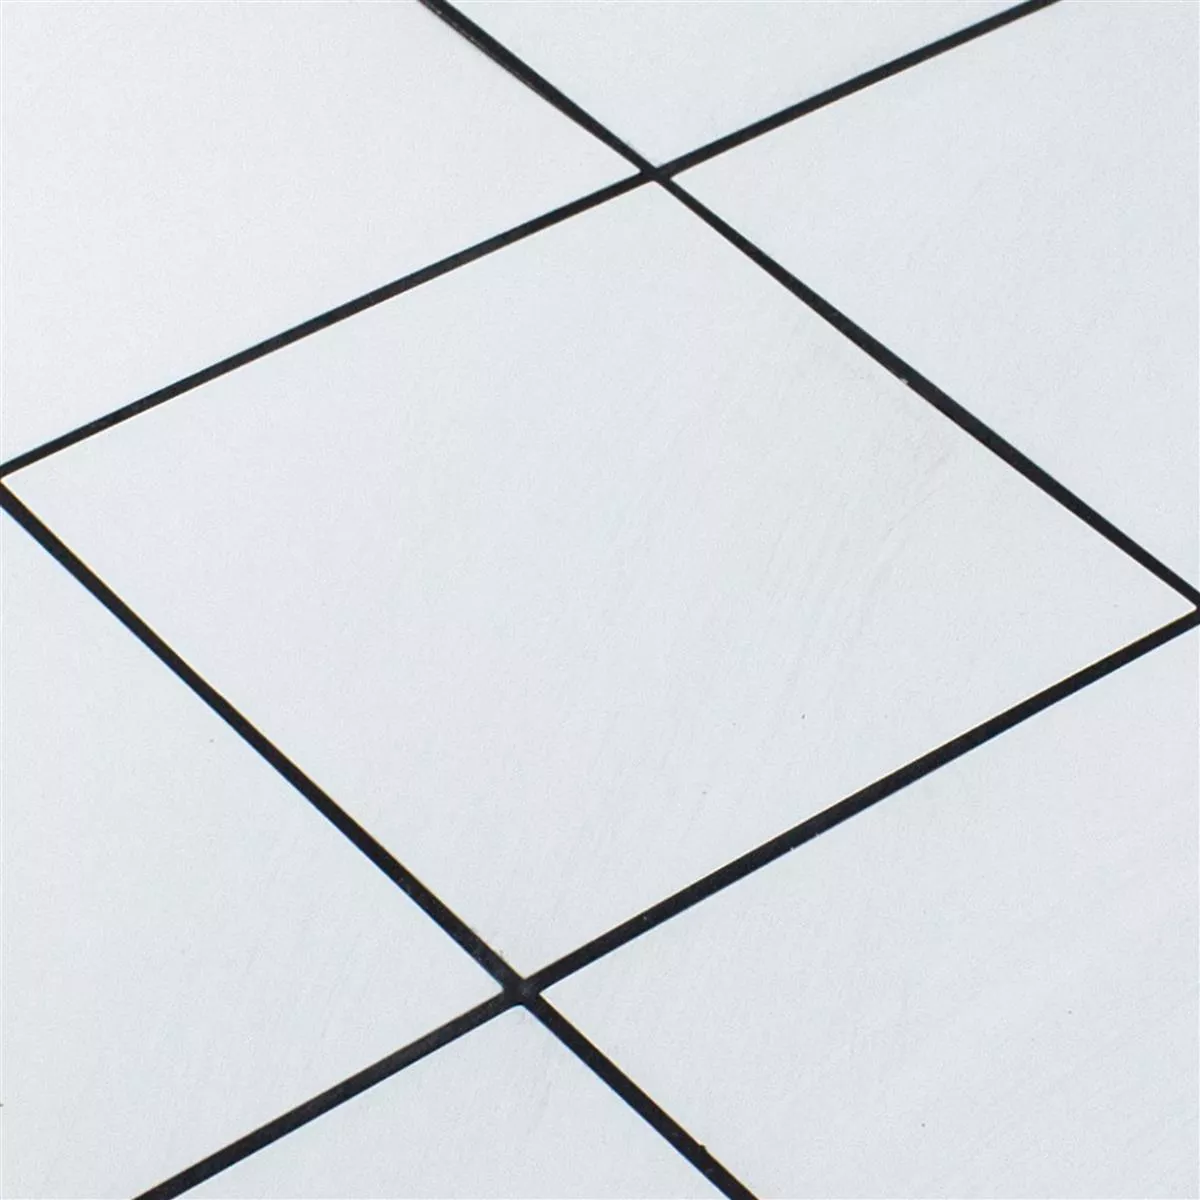 Aluminium Mosaic Tiles Lenora Self Adhesive Blanc